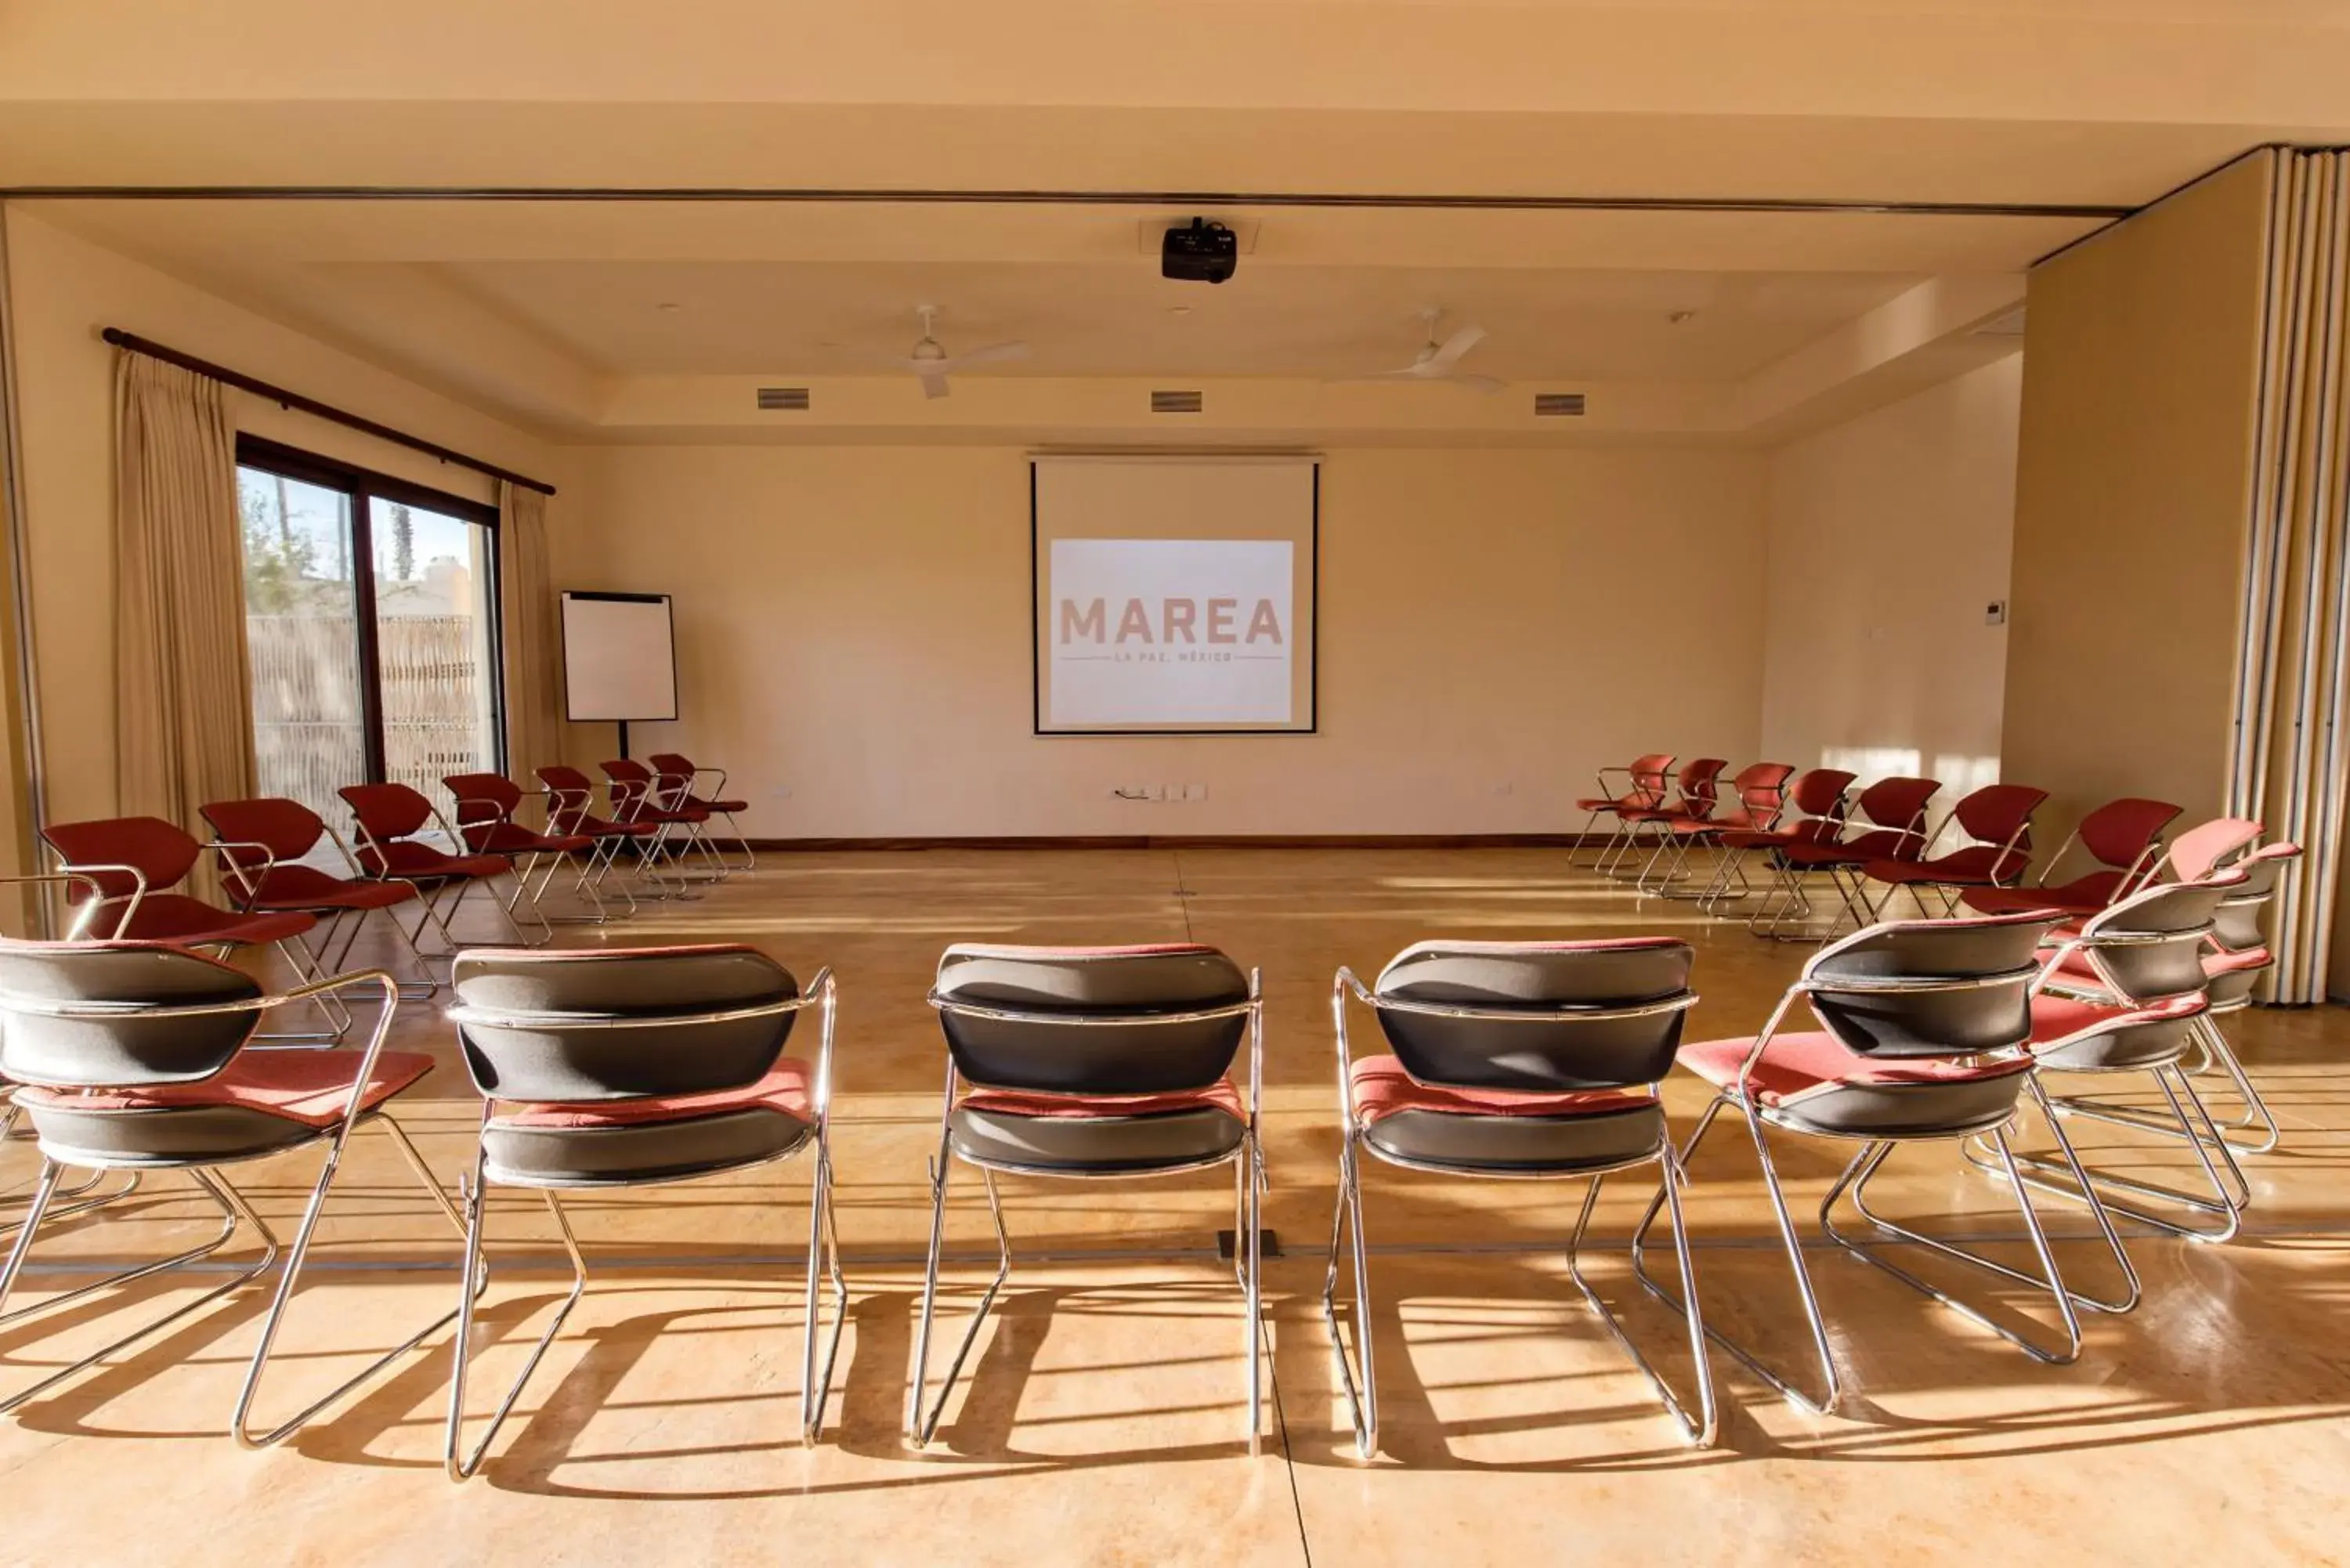 Meeting/conference room in Marea La Paz